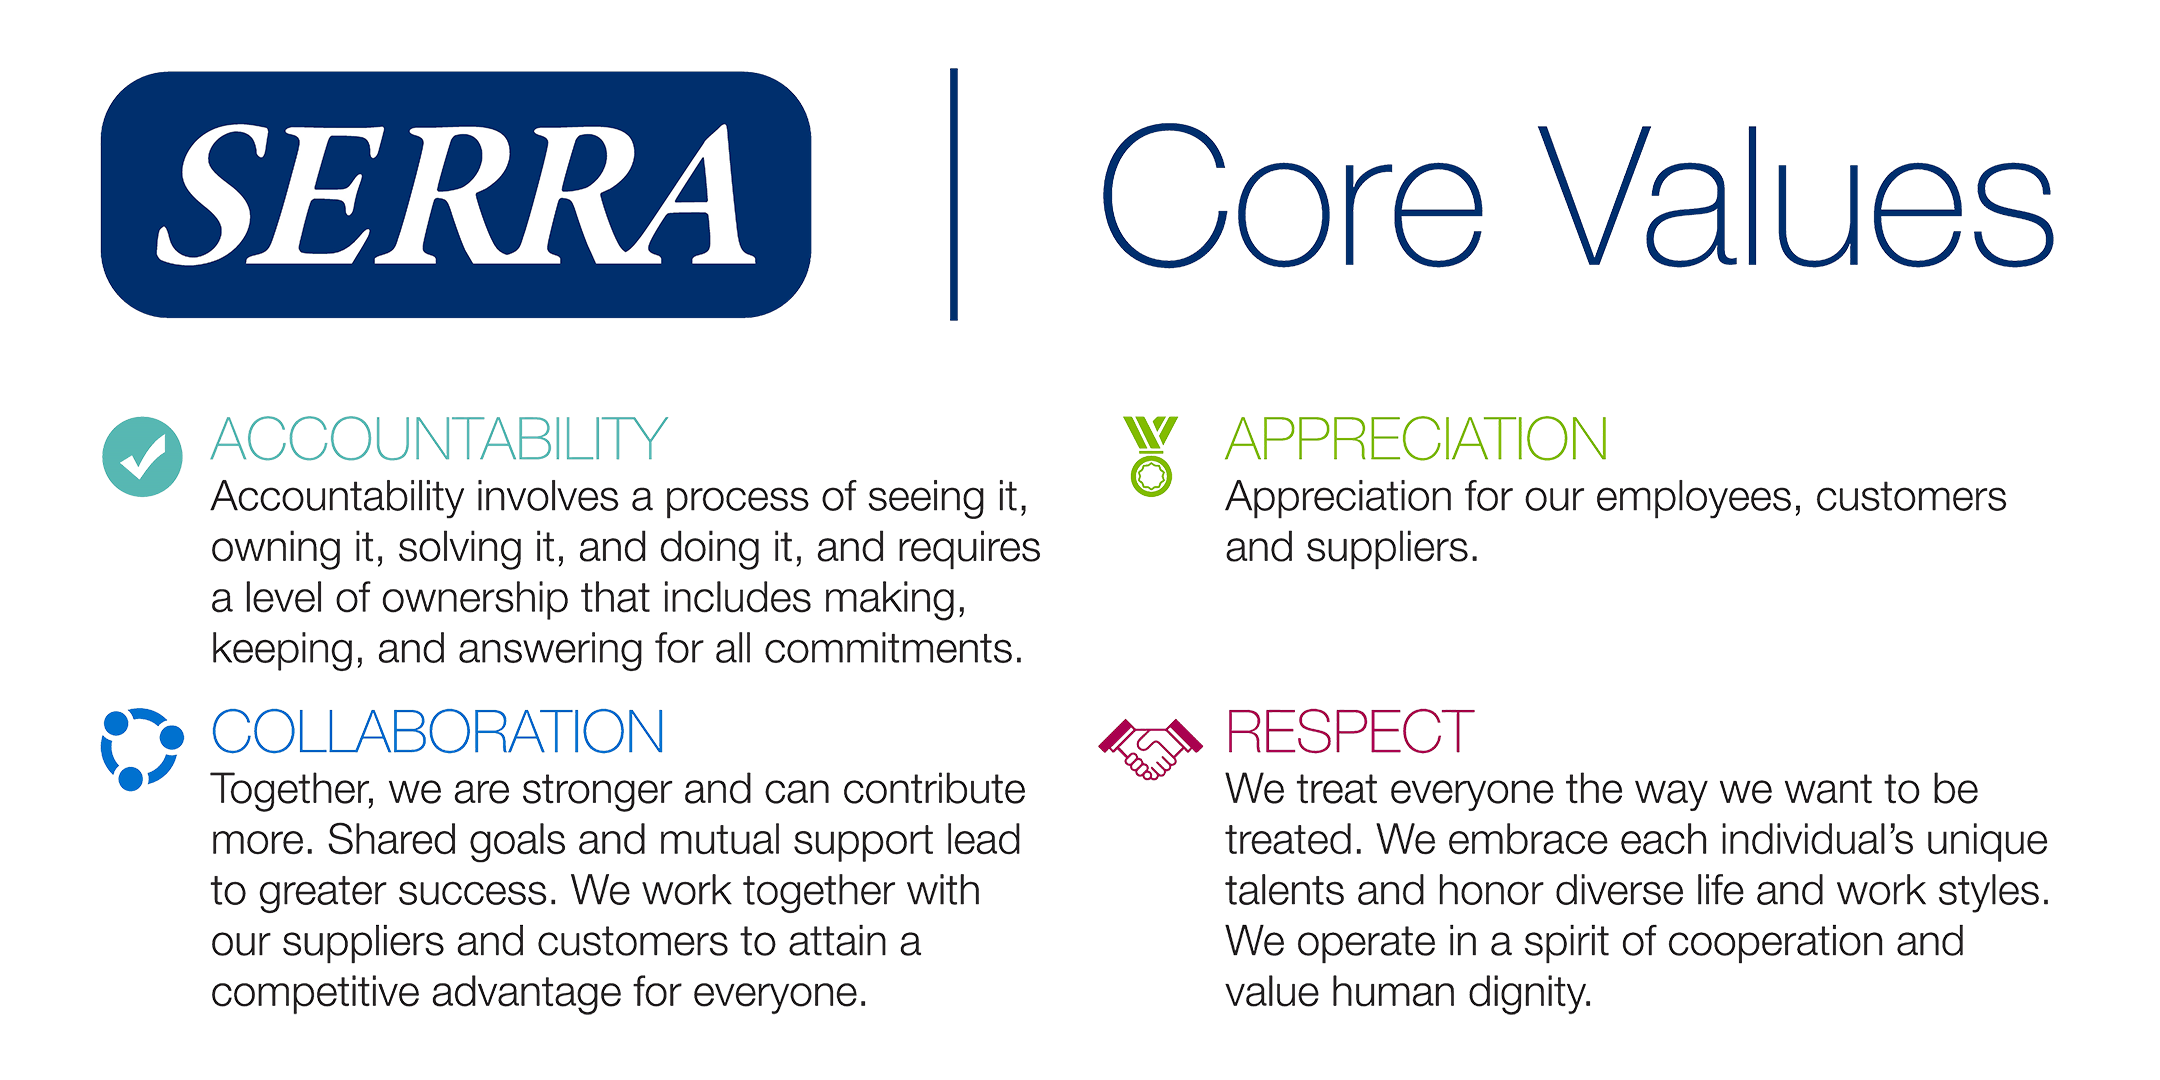 Serra Core Values